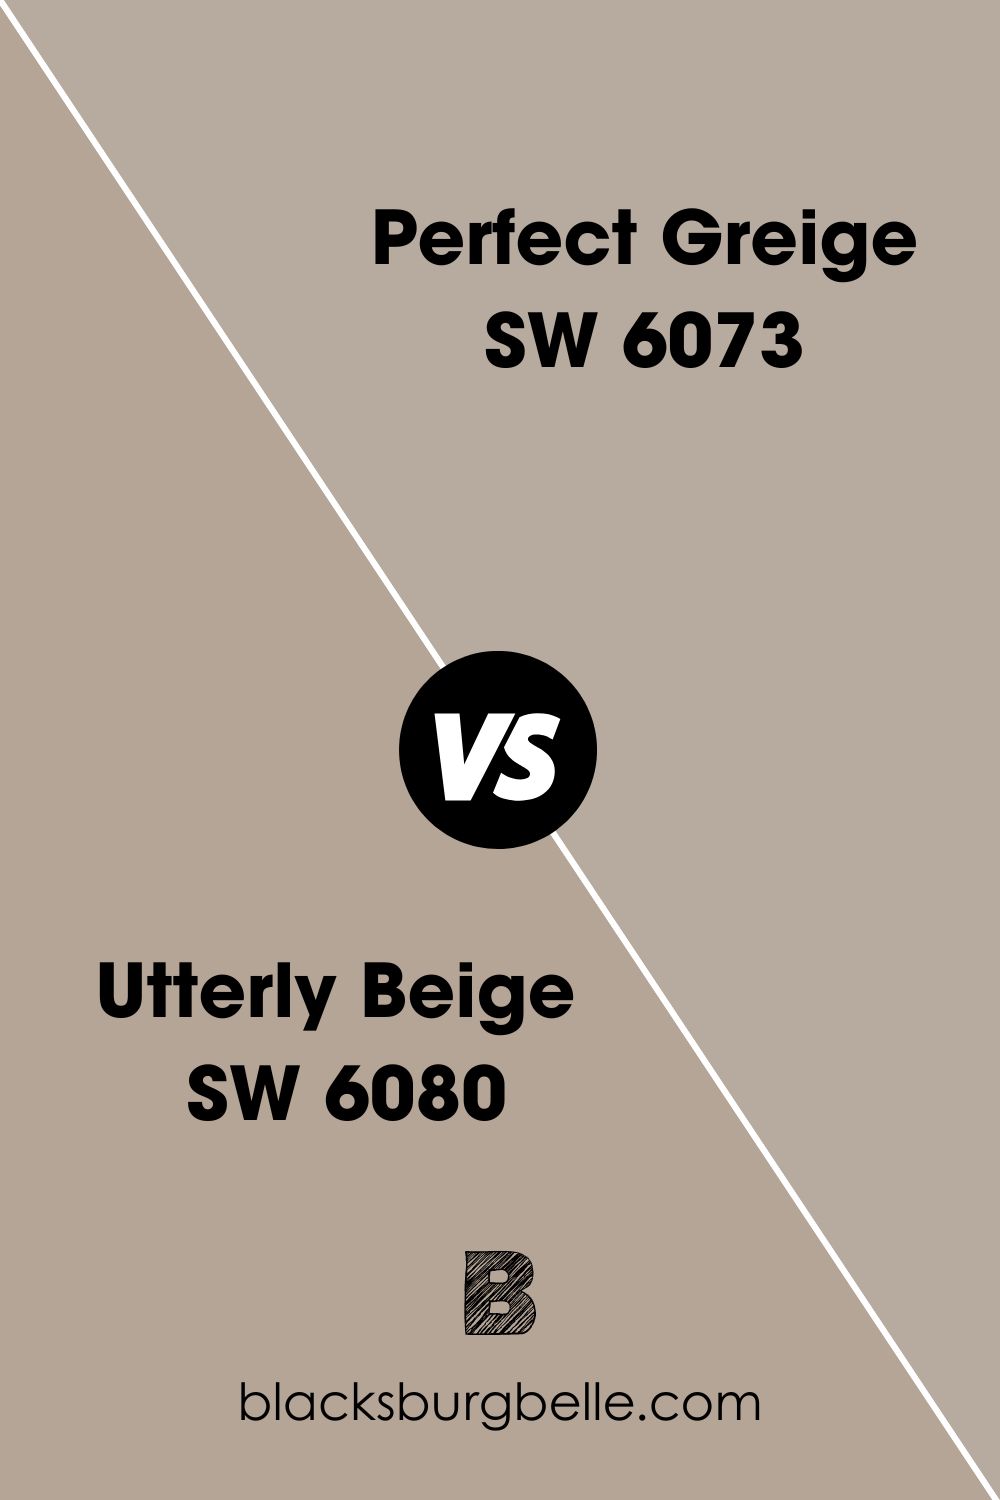 Utterly Beige SW 6080